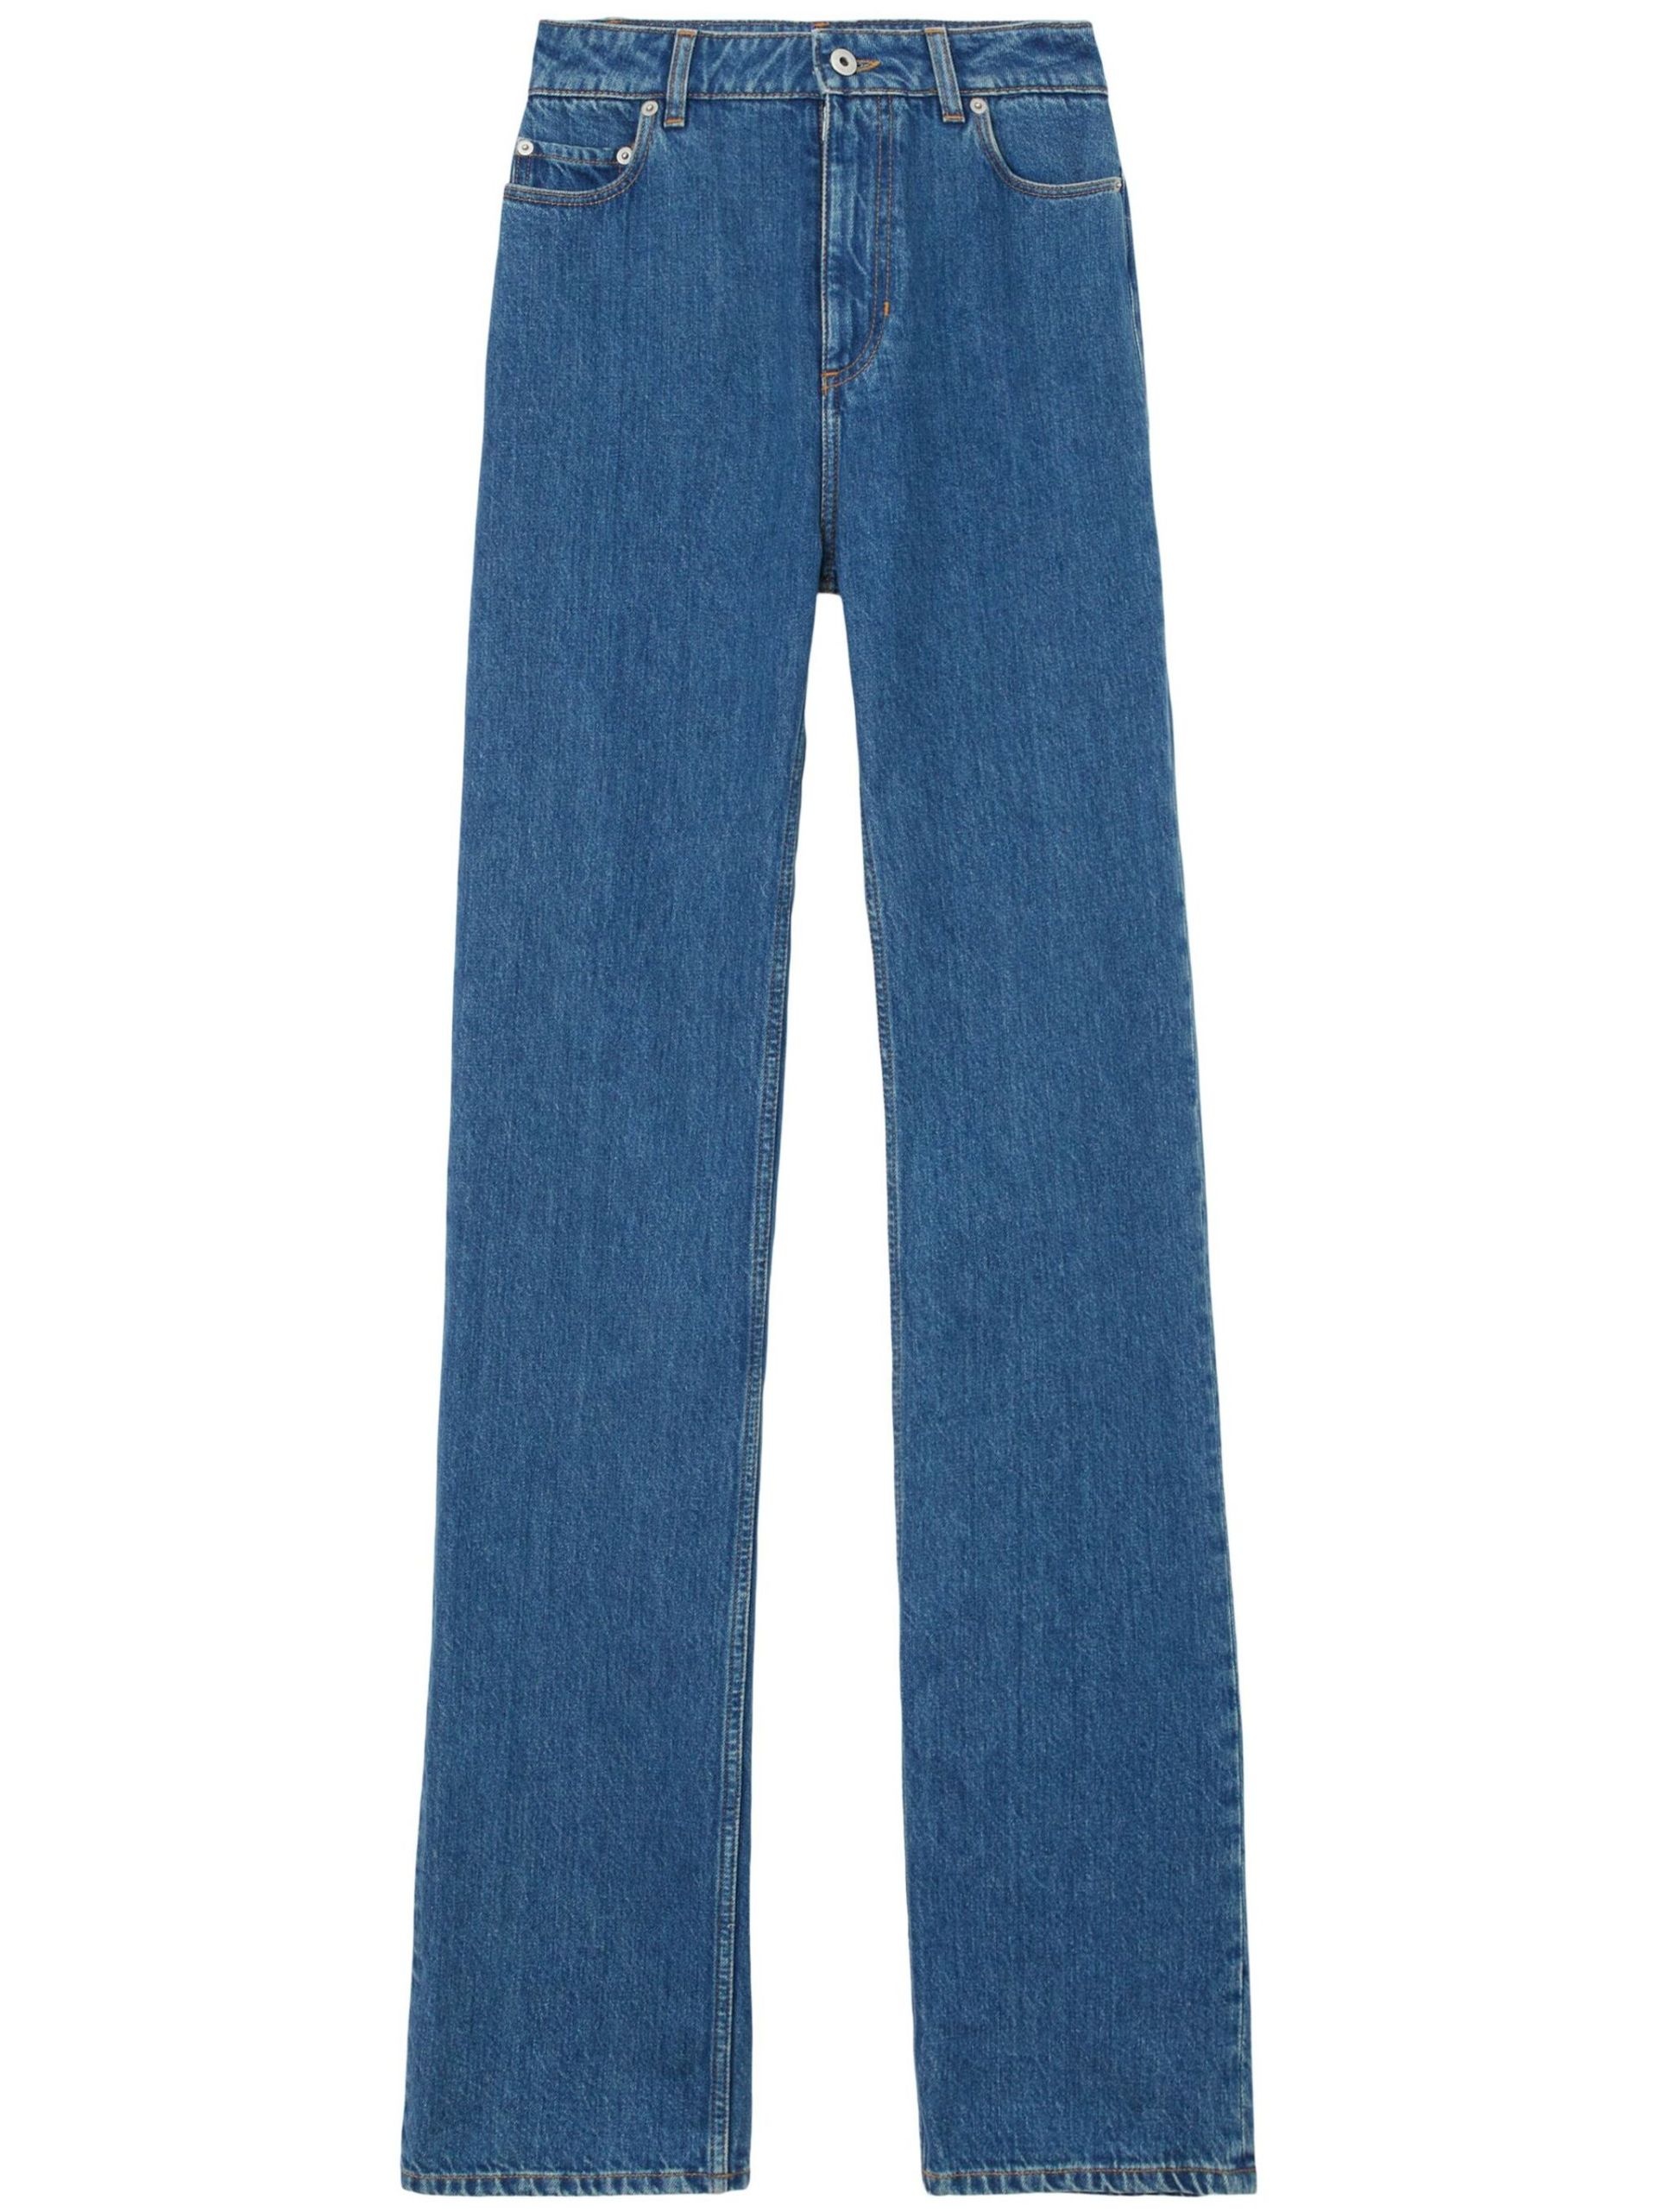 Blue Straight-Leg Cotton Jeans - 1